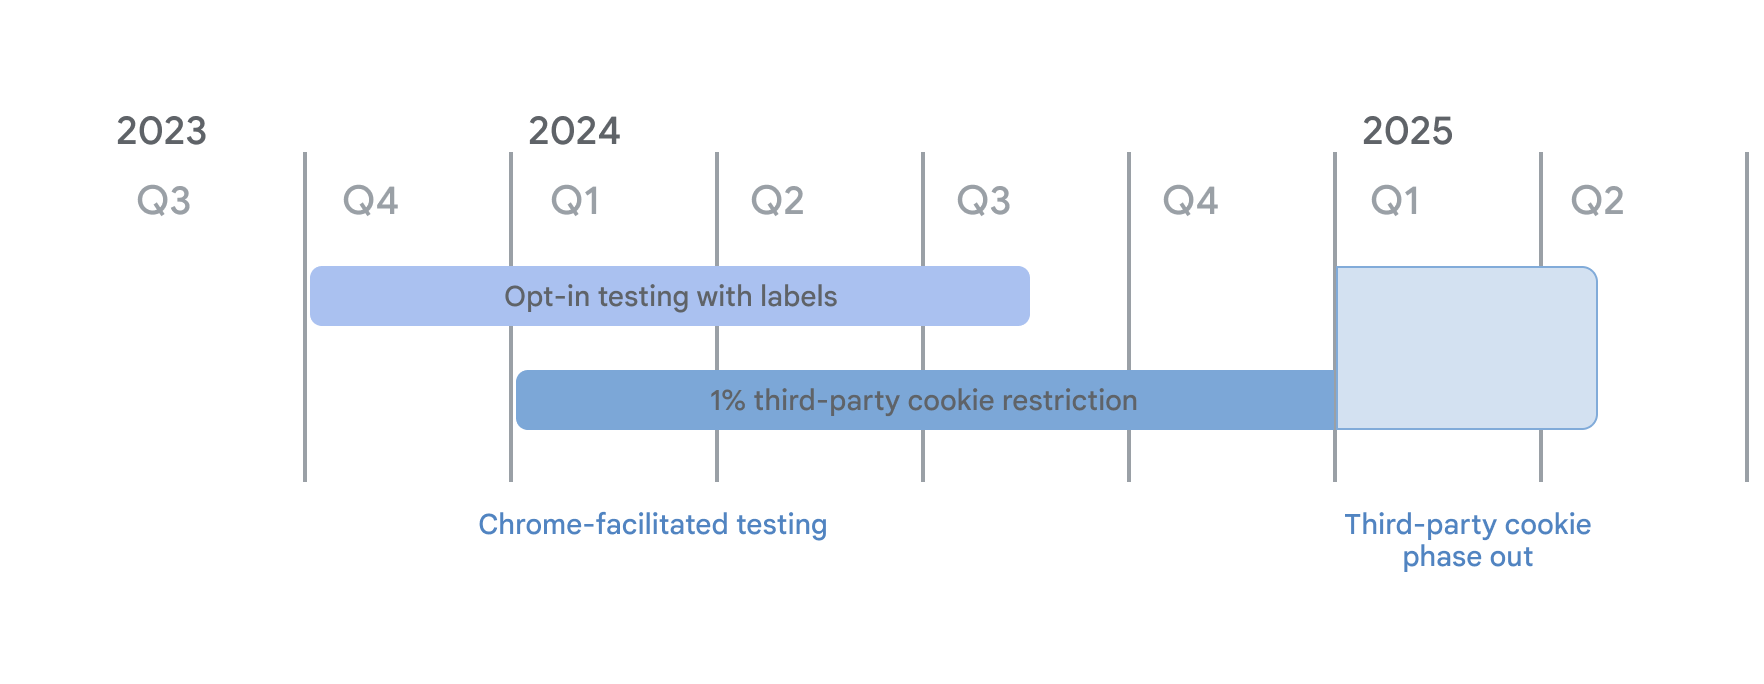 तीसरे पक्ष की कुकी के बंद होने की टाइमलाइन. Chrome की सुविधा वाली टेस्टिंग के तहत, लेबल मोड के साथ ऑप्ट-इन टेस्ट करने की सुविधा, साल 2023 की चौथी तिमाही से शुरू हो गई है. साथ ही, 4 जनवरी, 2024 से 3PC की 1% पाबंदियों को लागू किया गया है. तीसरे पक्ष की कुकी के फ़ेज़आउट की शुरुआत, 2025 की पहली तिमाही तक की जाएगी.